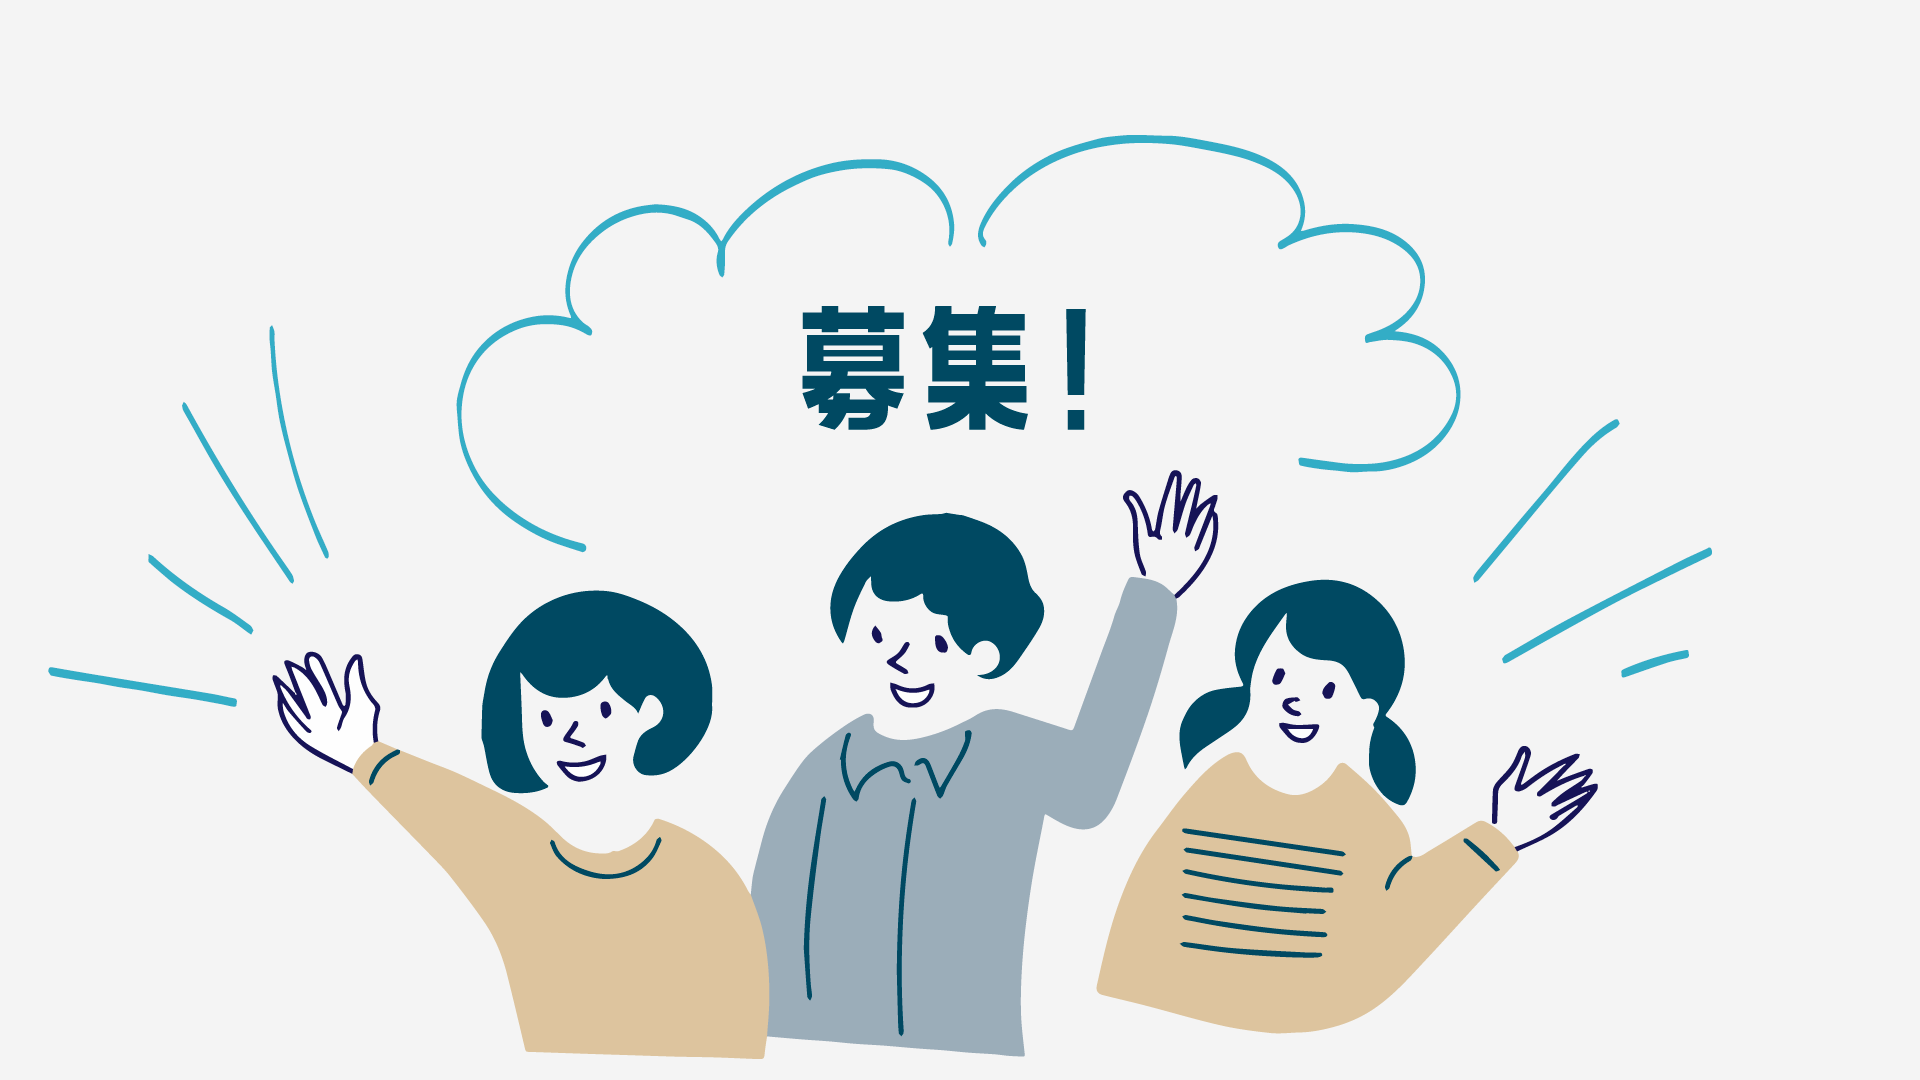 滋賀県地域情報化推進会議マイナンバーに関するアイデアソン運営業務委託の公募について